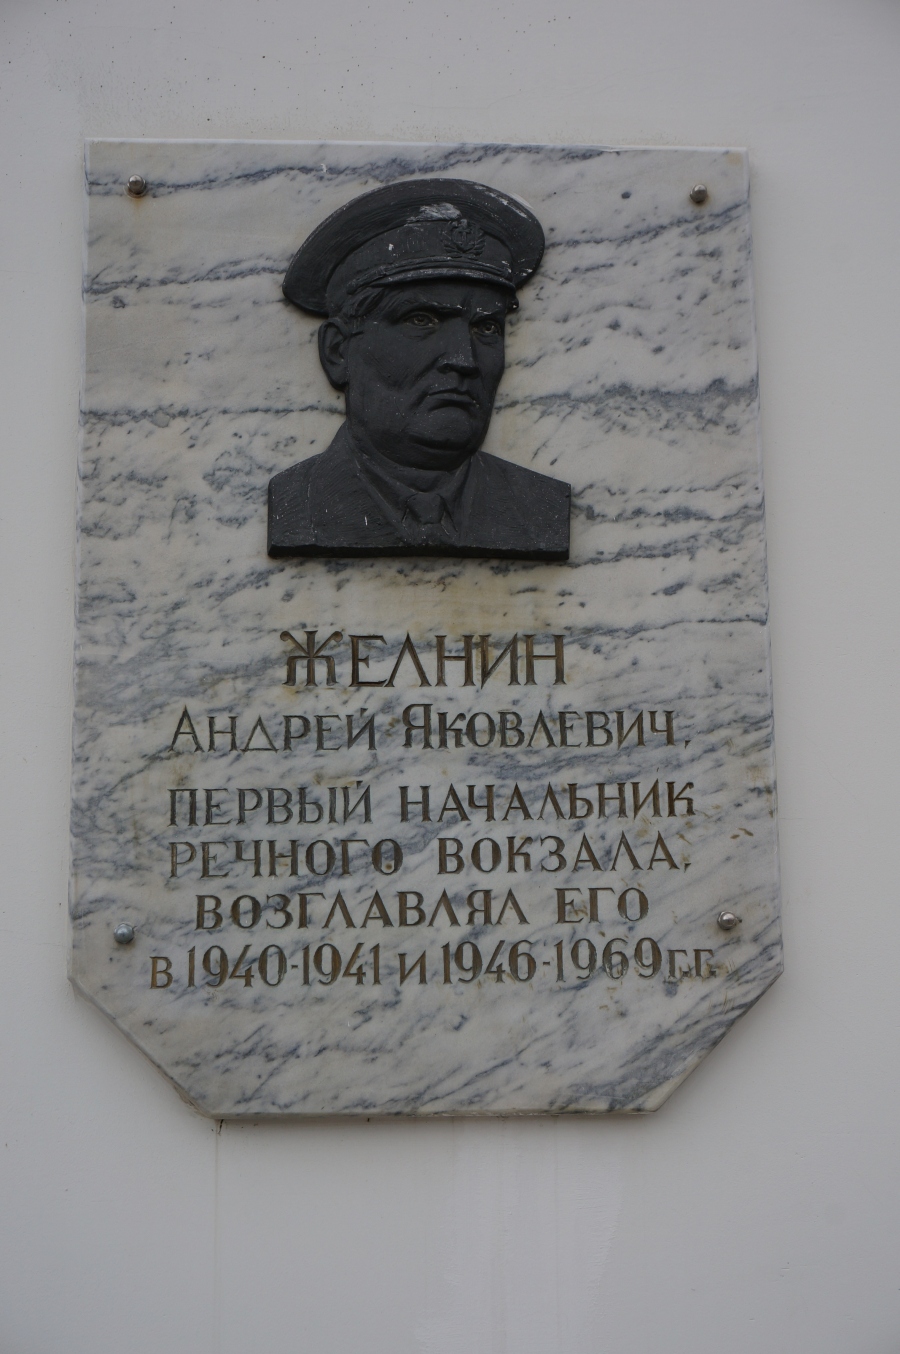 Perm, Монастырская улица, 2. Perm — Memorial plaques